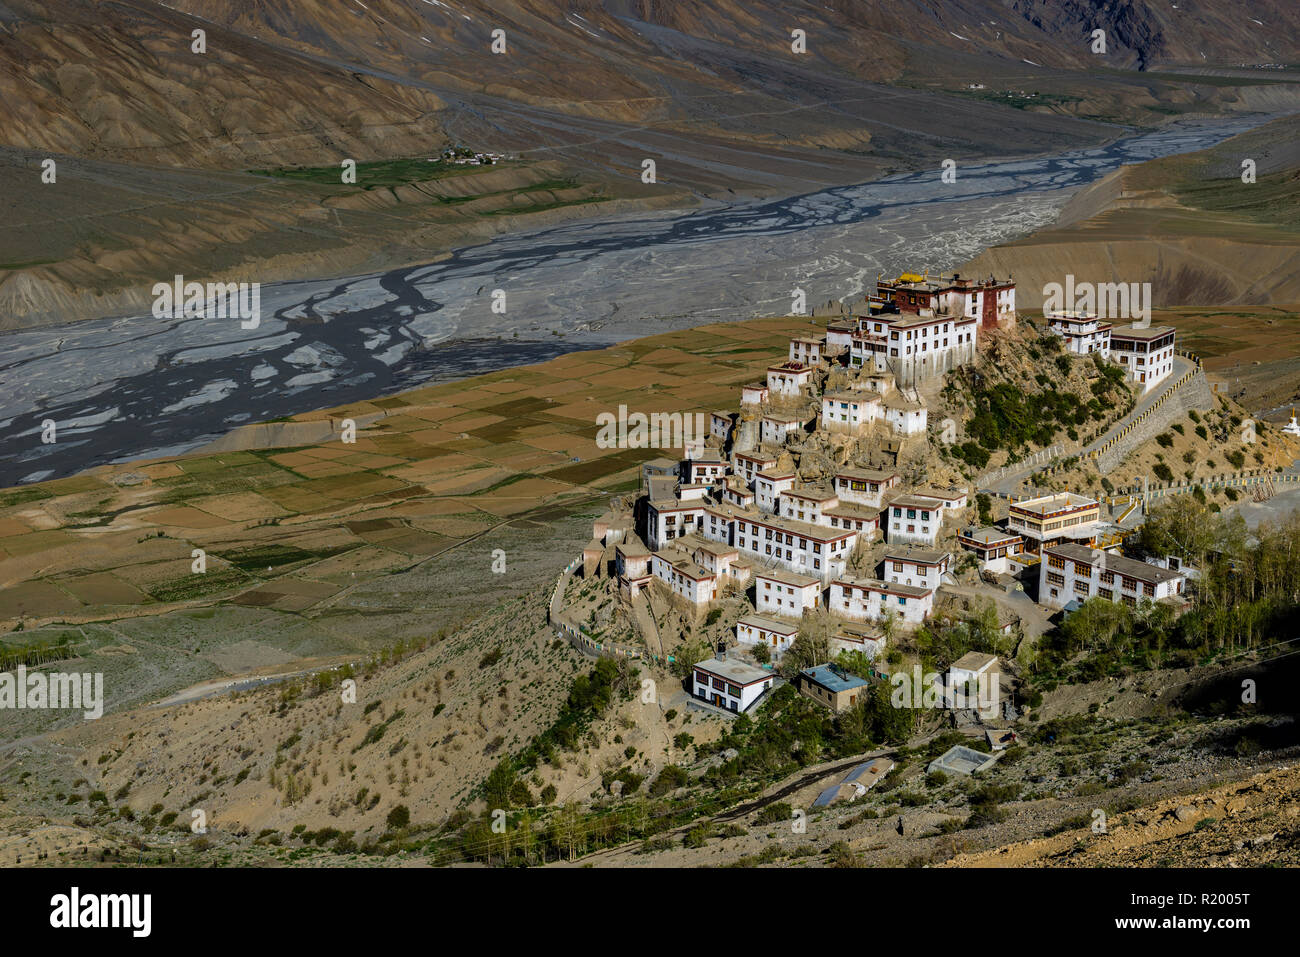 Vista aerea su Ki Gompa, un tibetano monastero buddista situato sulla sommità di una collina ad una altitudine di 4,166 metri, la Spiti Valley in background Foto Stock